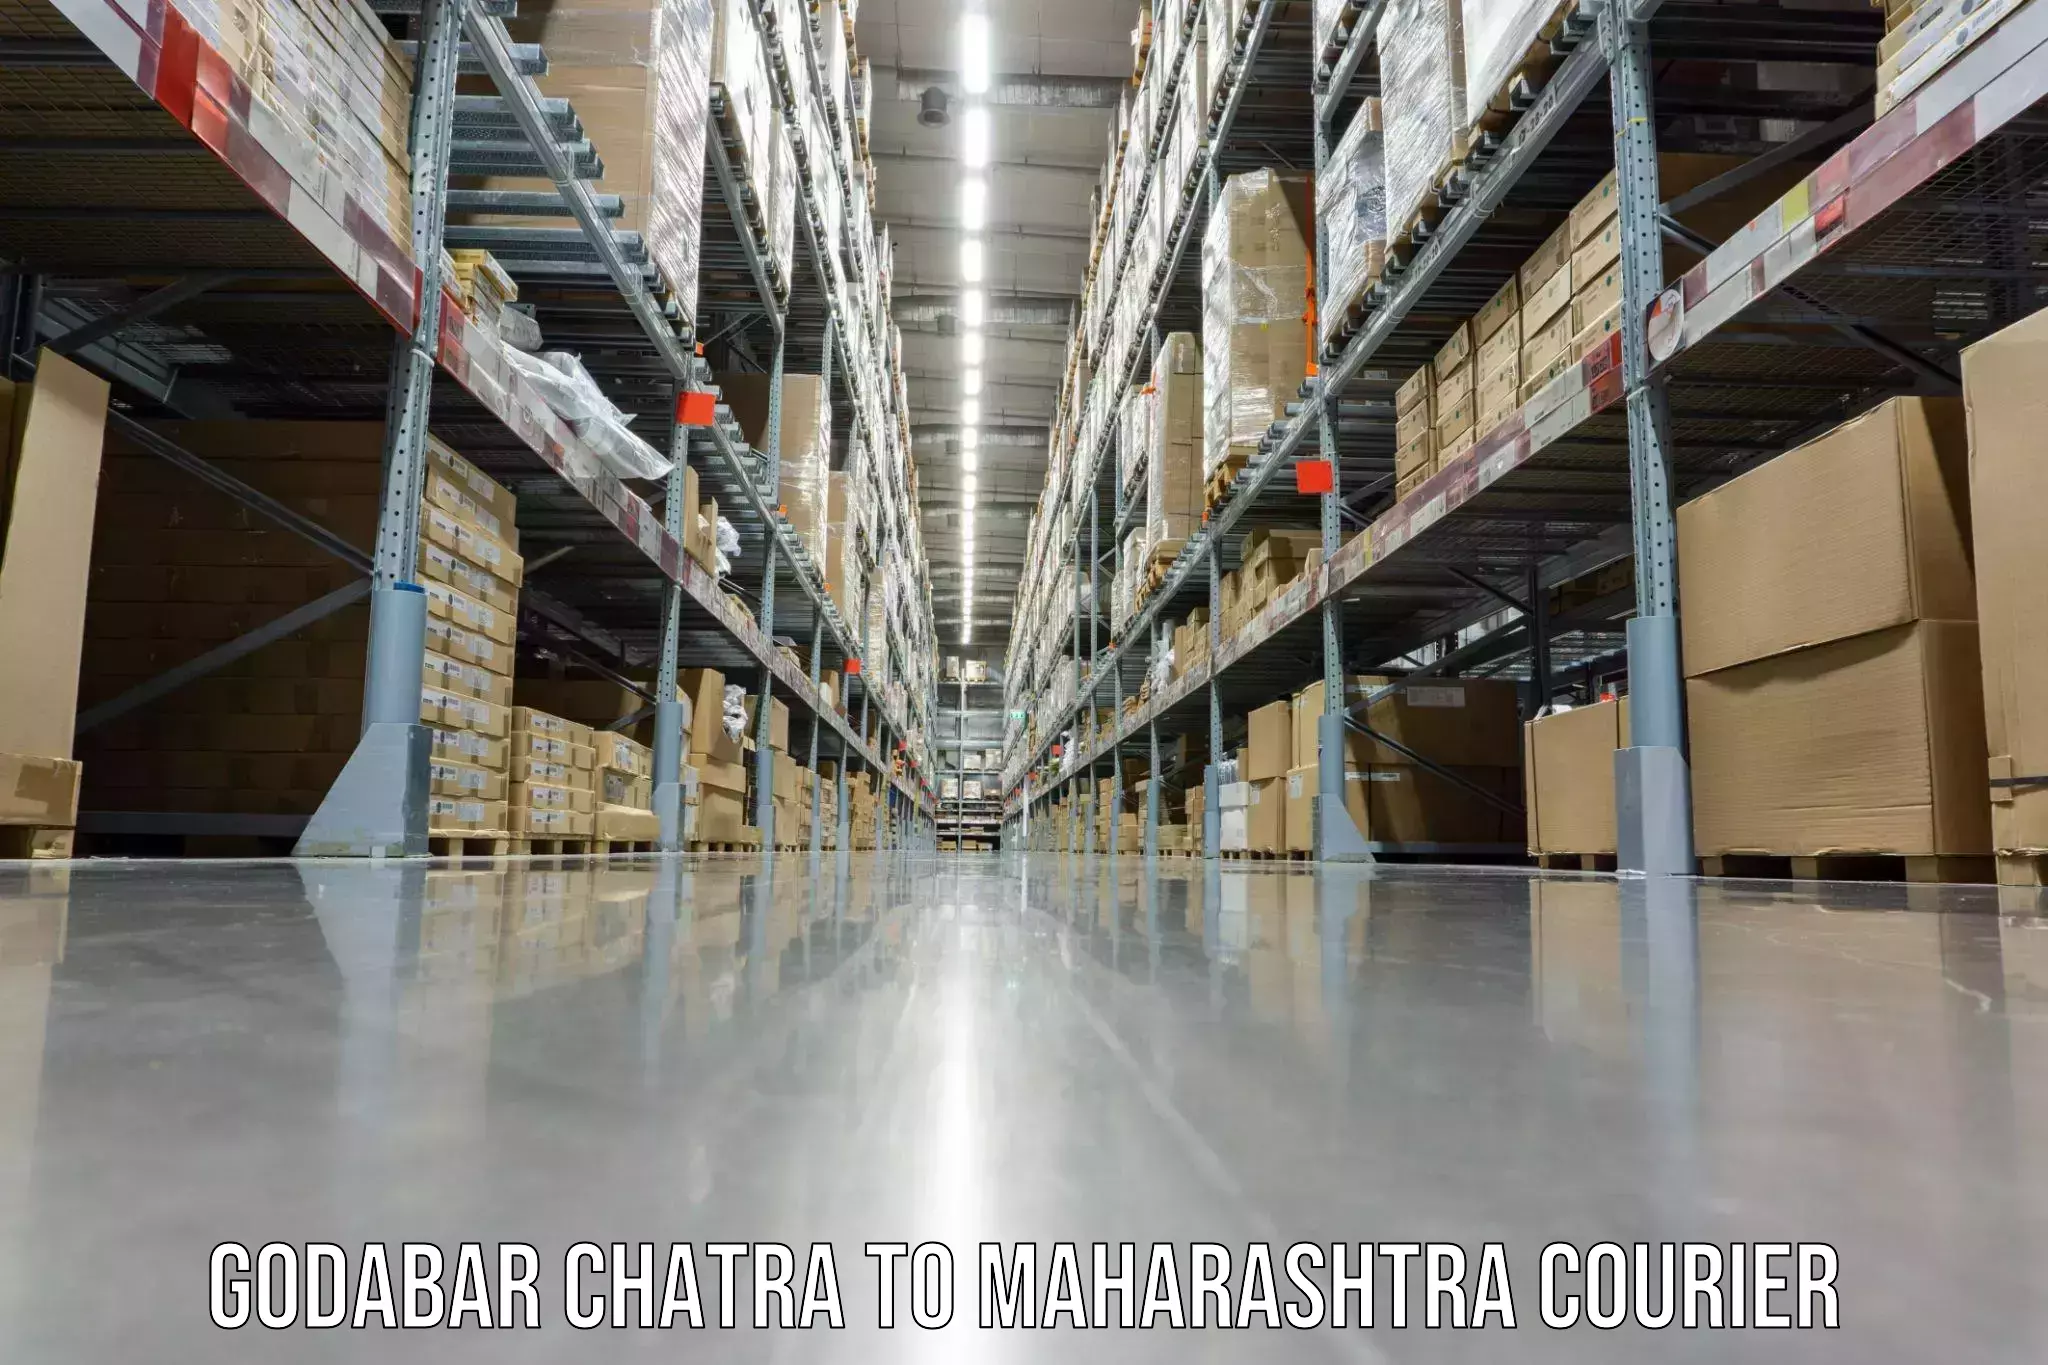 Quality relocation services Godabar Chatra to Maharashtra